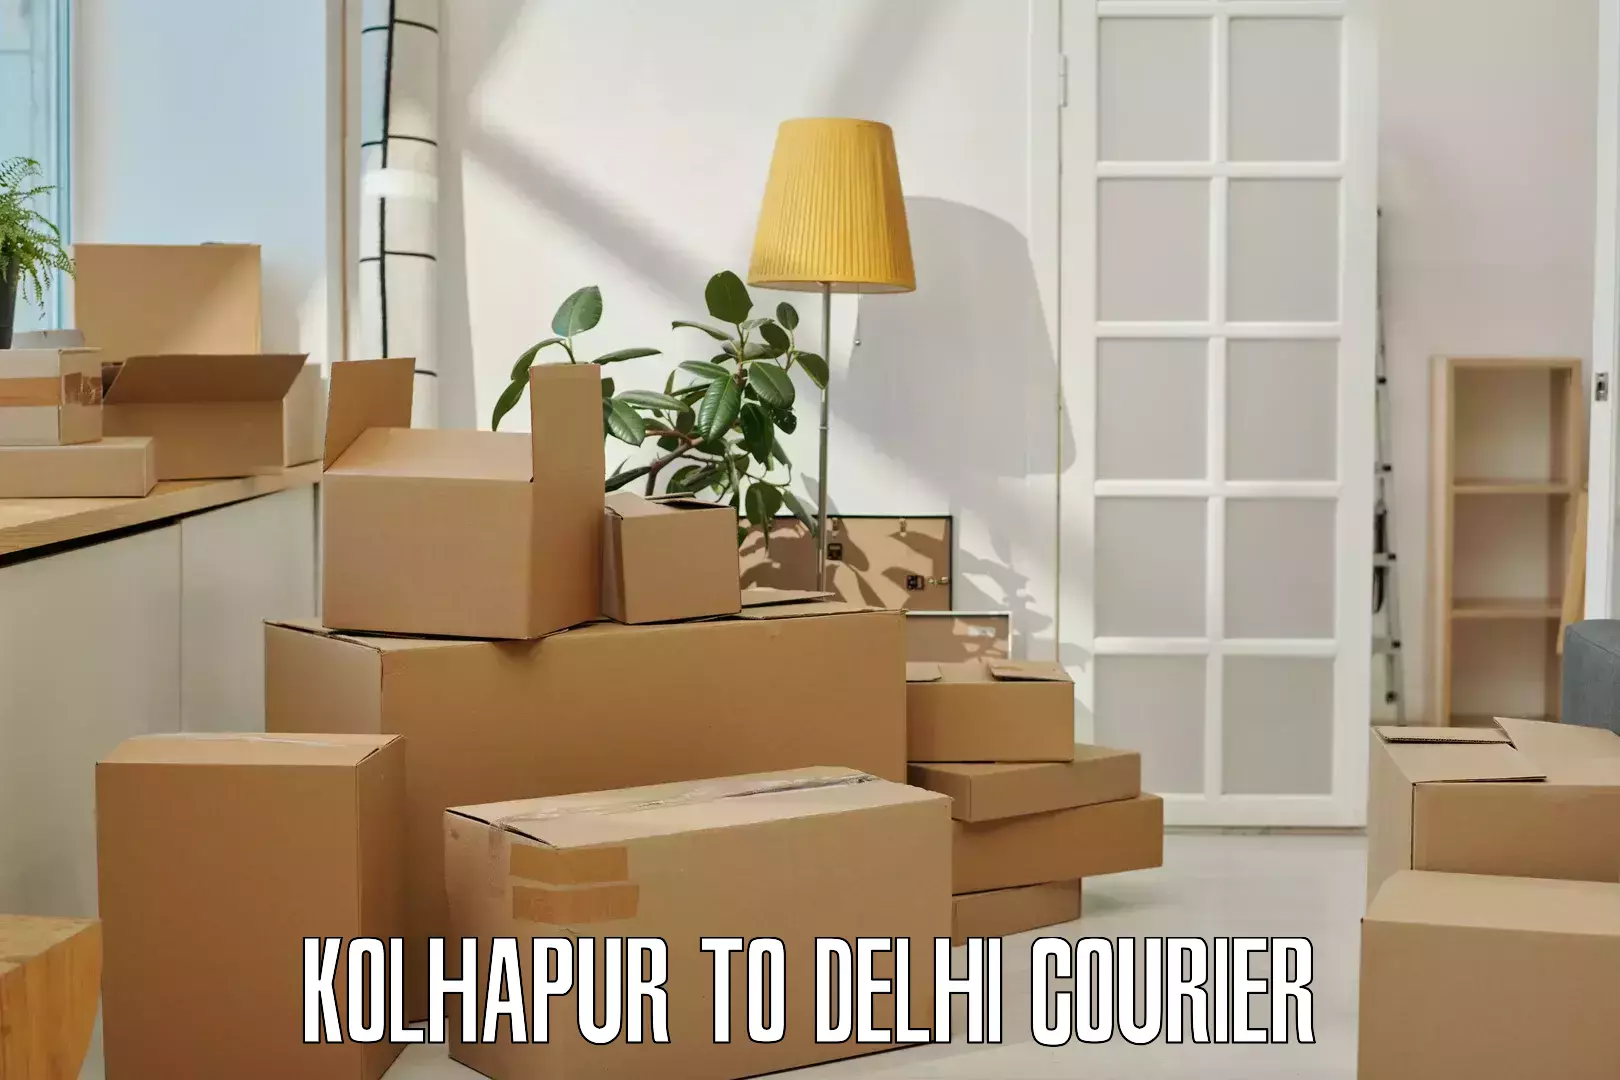 24-hour courier services in Kolhapur to Jamia Millia Islamia New Delhi